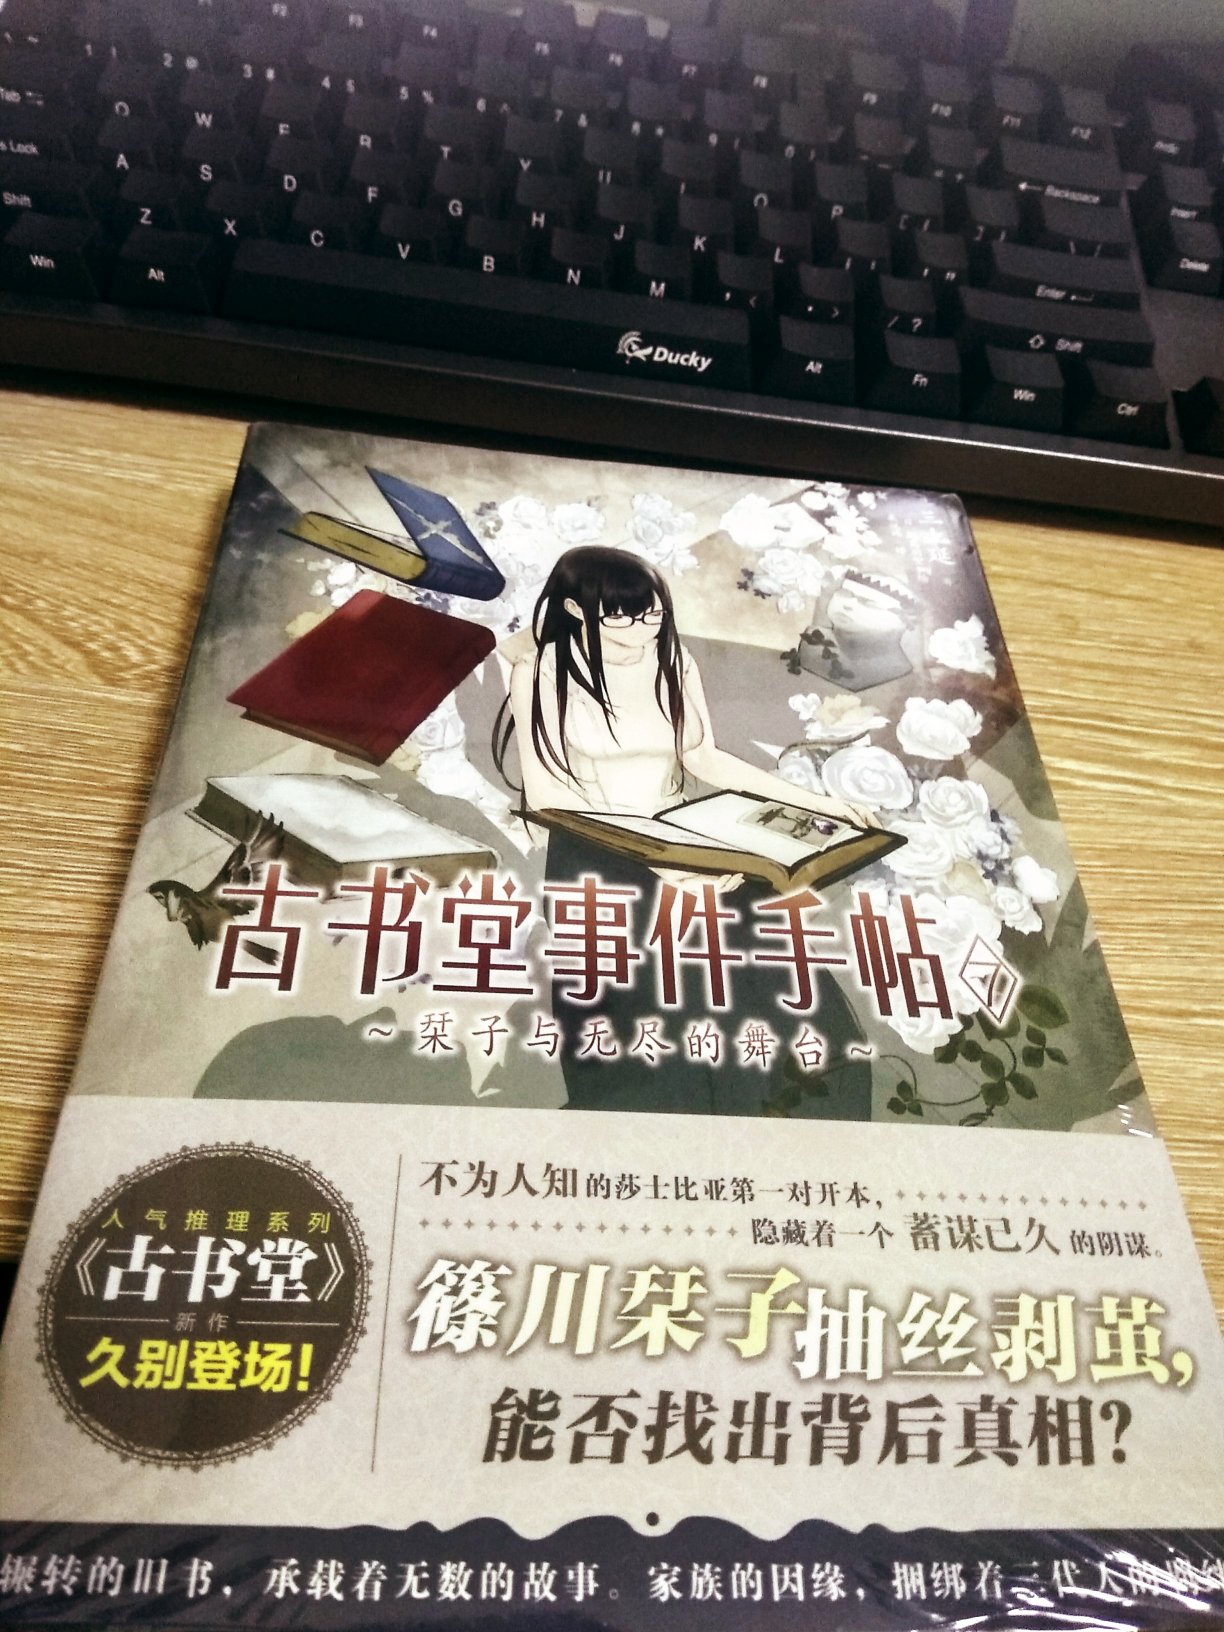 这本书等了两年了，简体中文版出的真迟，给天角差评！！